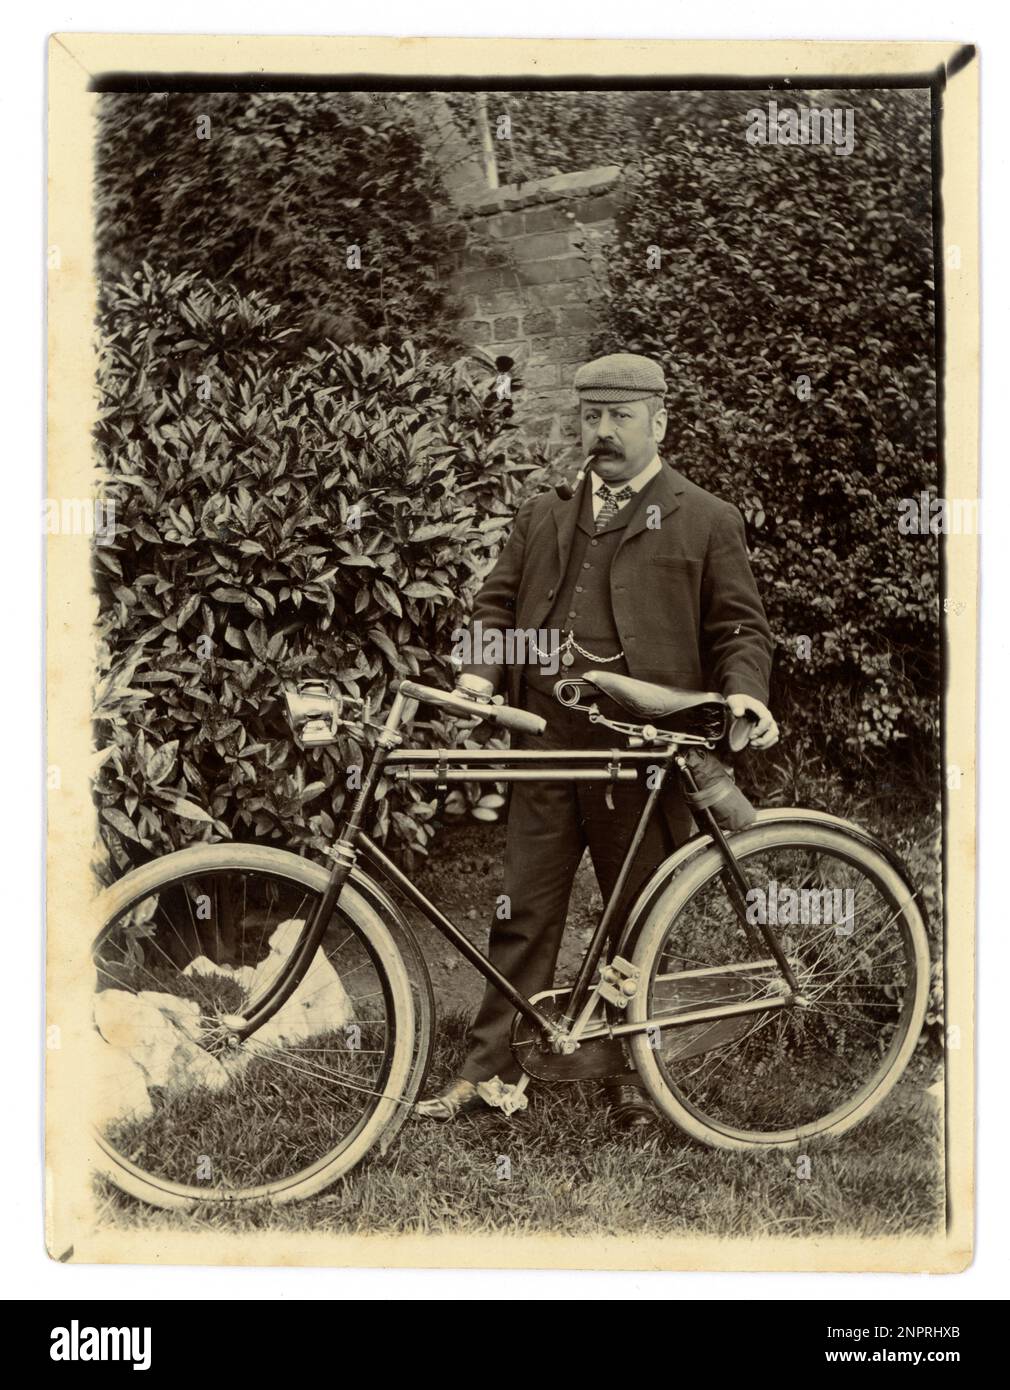 Originalfoto aus der viktorianischen Epoche eines Gentleman mittleren Alters mit seinem Fahrrad in einem Garten, Oldtimer-Radfahren, um 1898, Worcester Gegend, Großbritannien Stockfoto